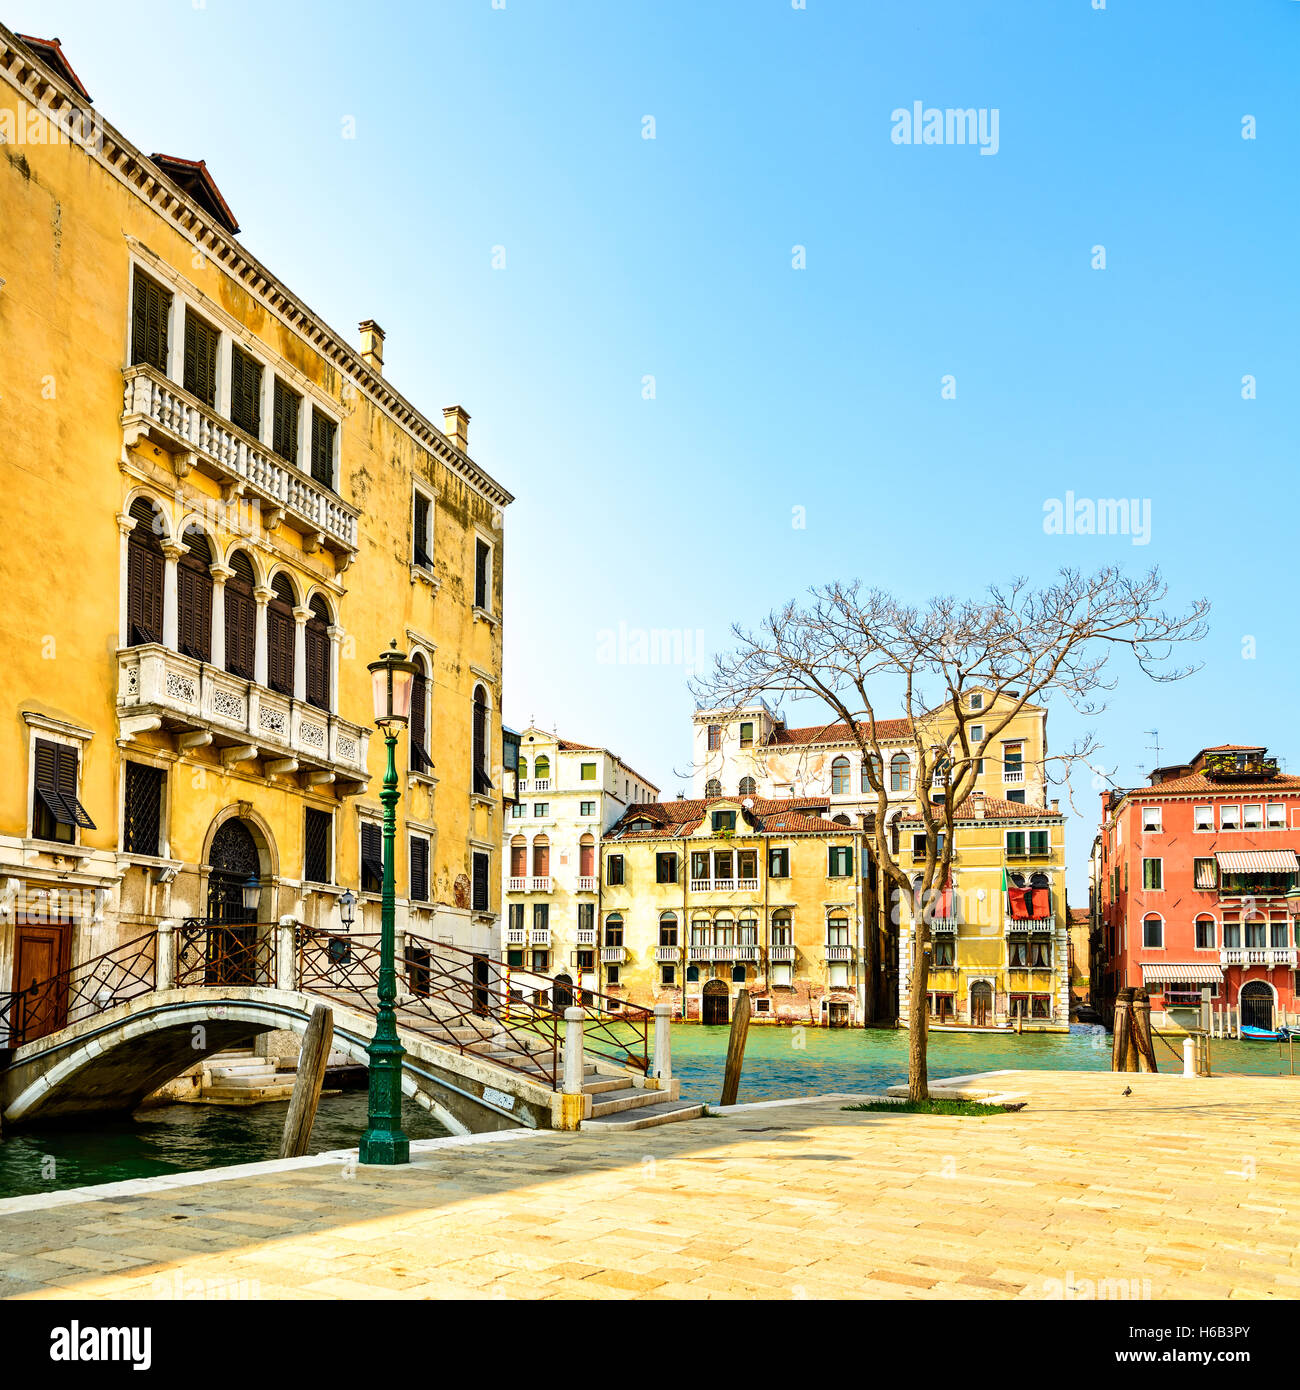 Venedig Stadtbild in Campo San Vio Square, Brücke, Baum und traditionellen Gebäude am Wasser Canale Grande. Italien, Europa. Stockfoto